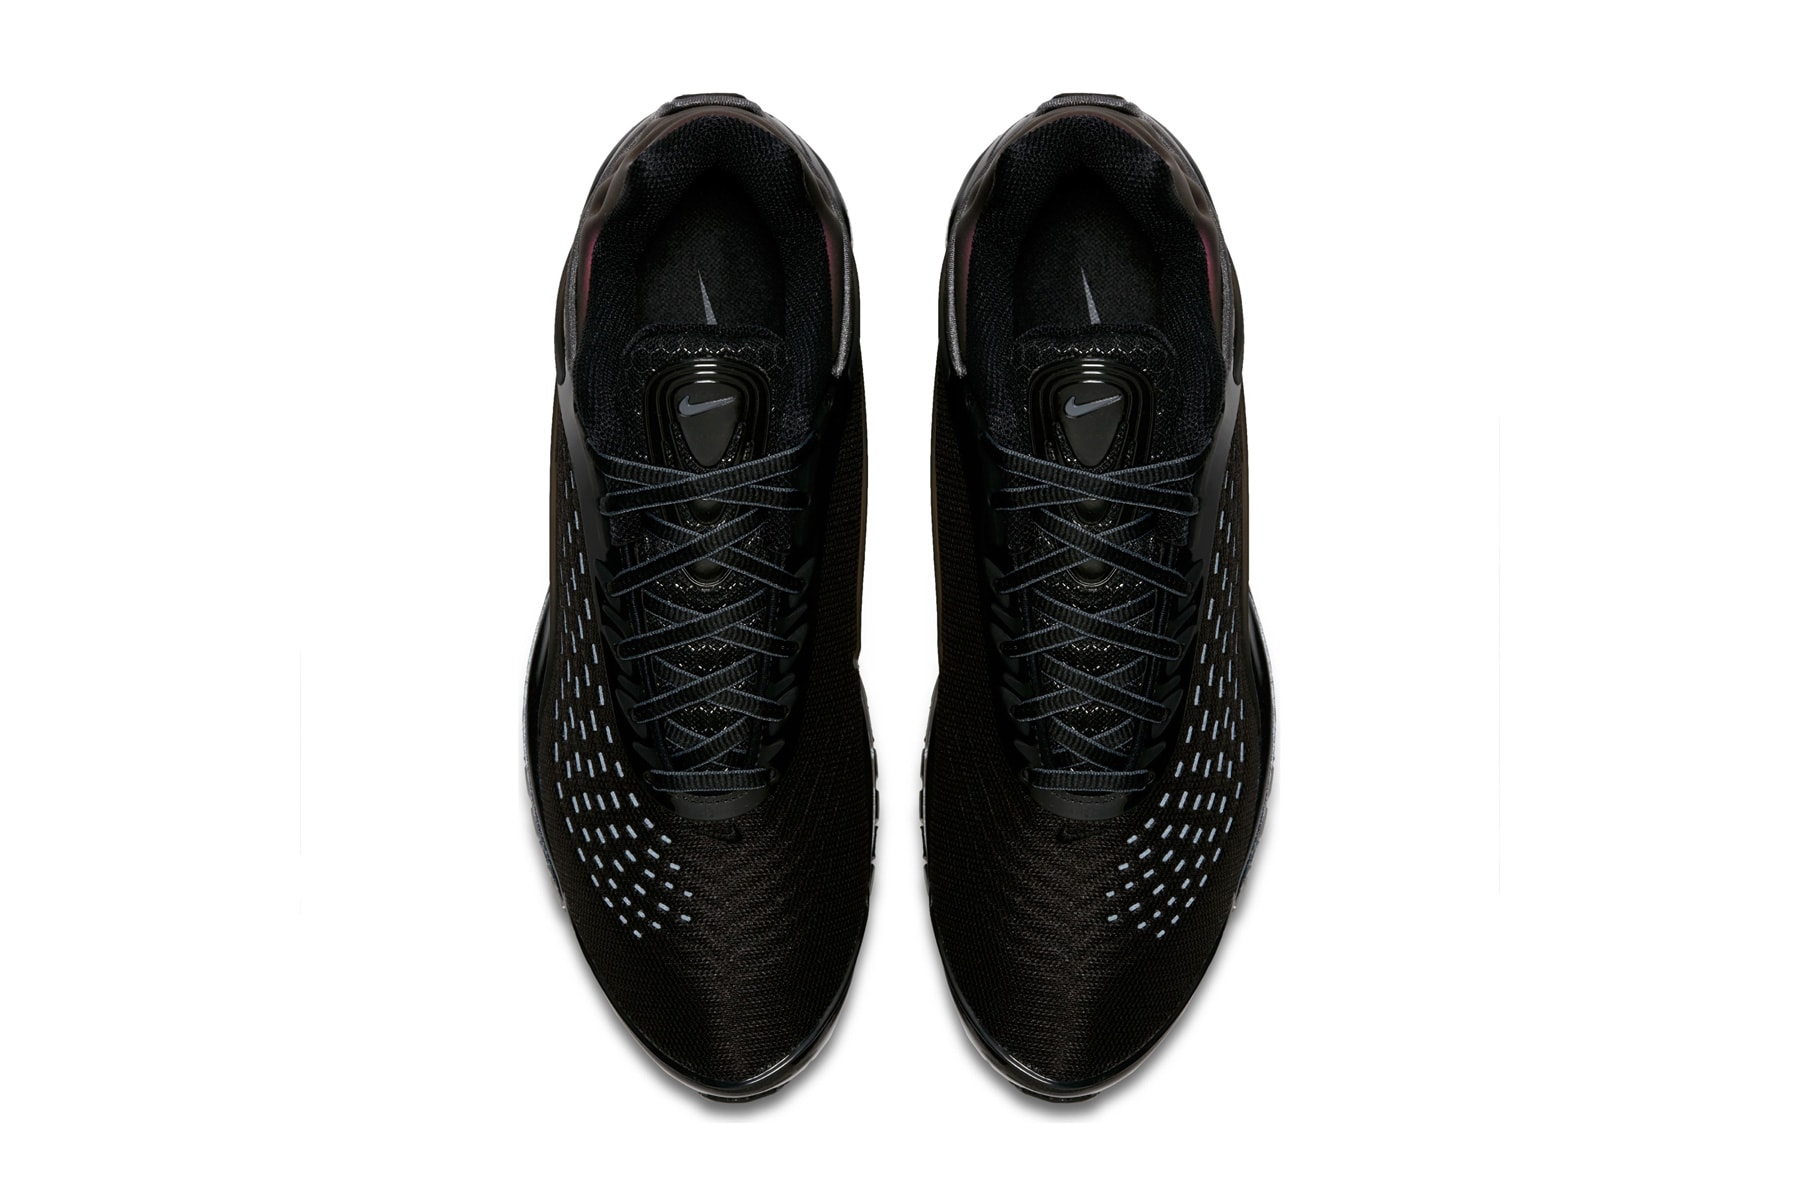 Nike Air Max Deluxe "Triple Black/Bronze" sneaker colorway release date info price footwear